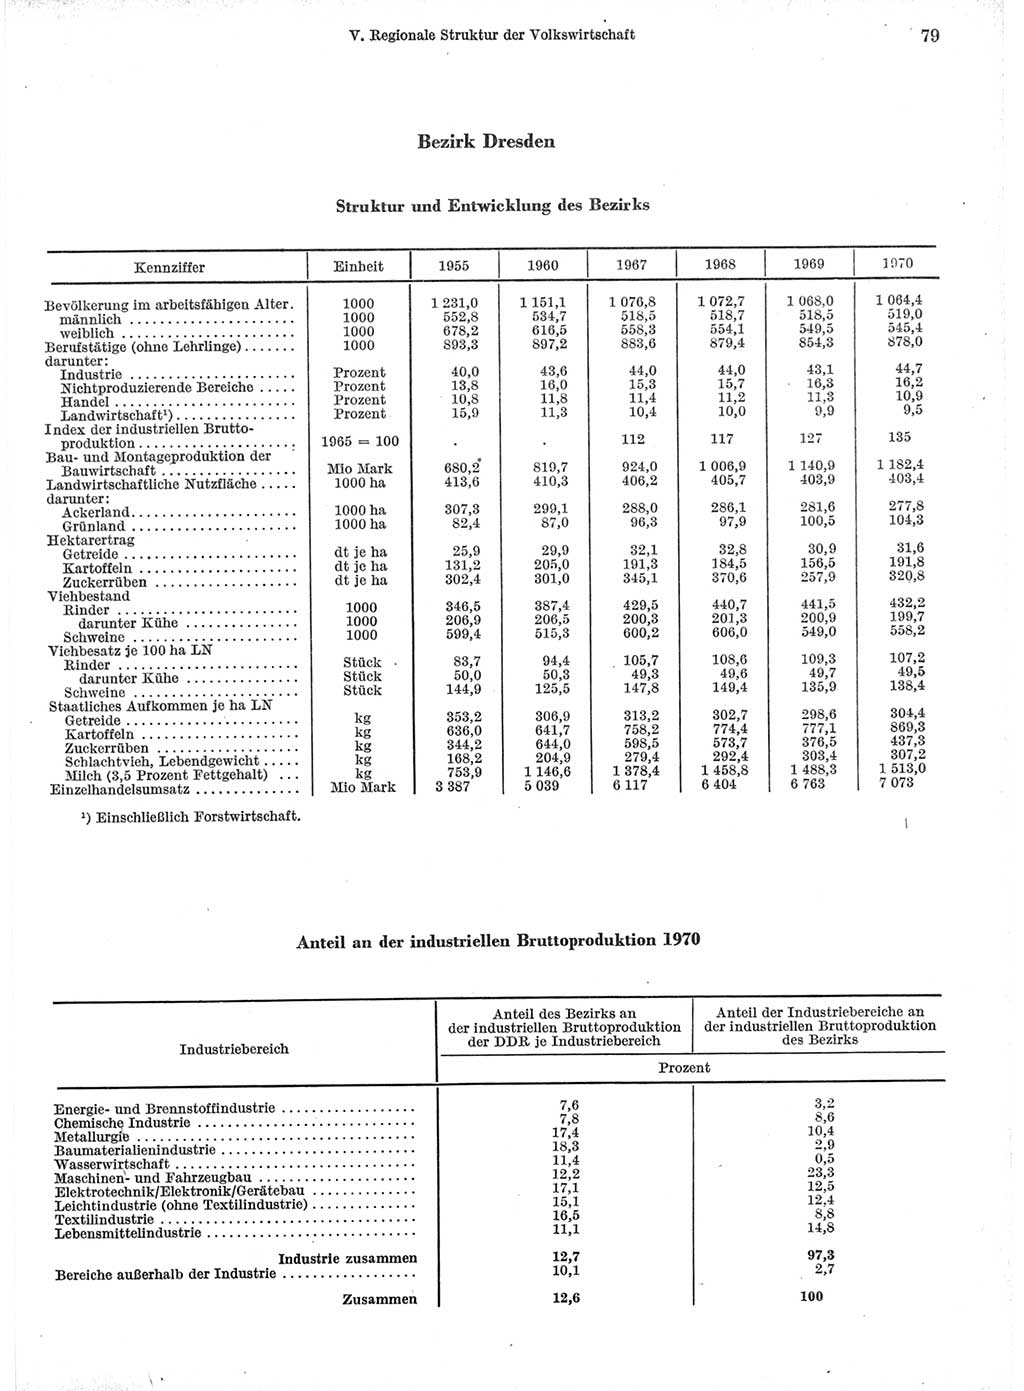 Statistisches Jahrbuch der Deutschen Demokratischen Republik (DDR) 1971, Seite 79 (Stat. Jb. DDR 1971, S. 79)